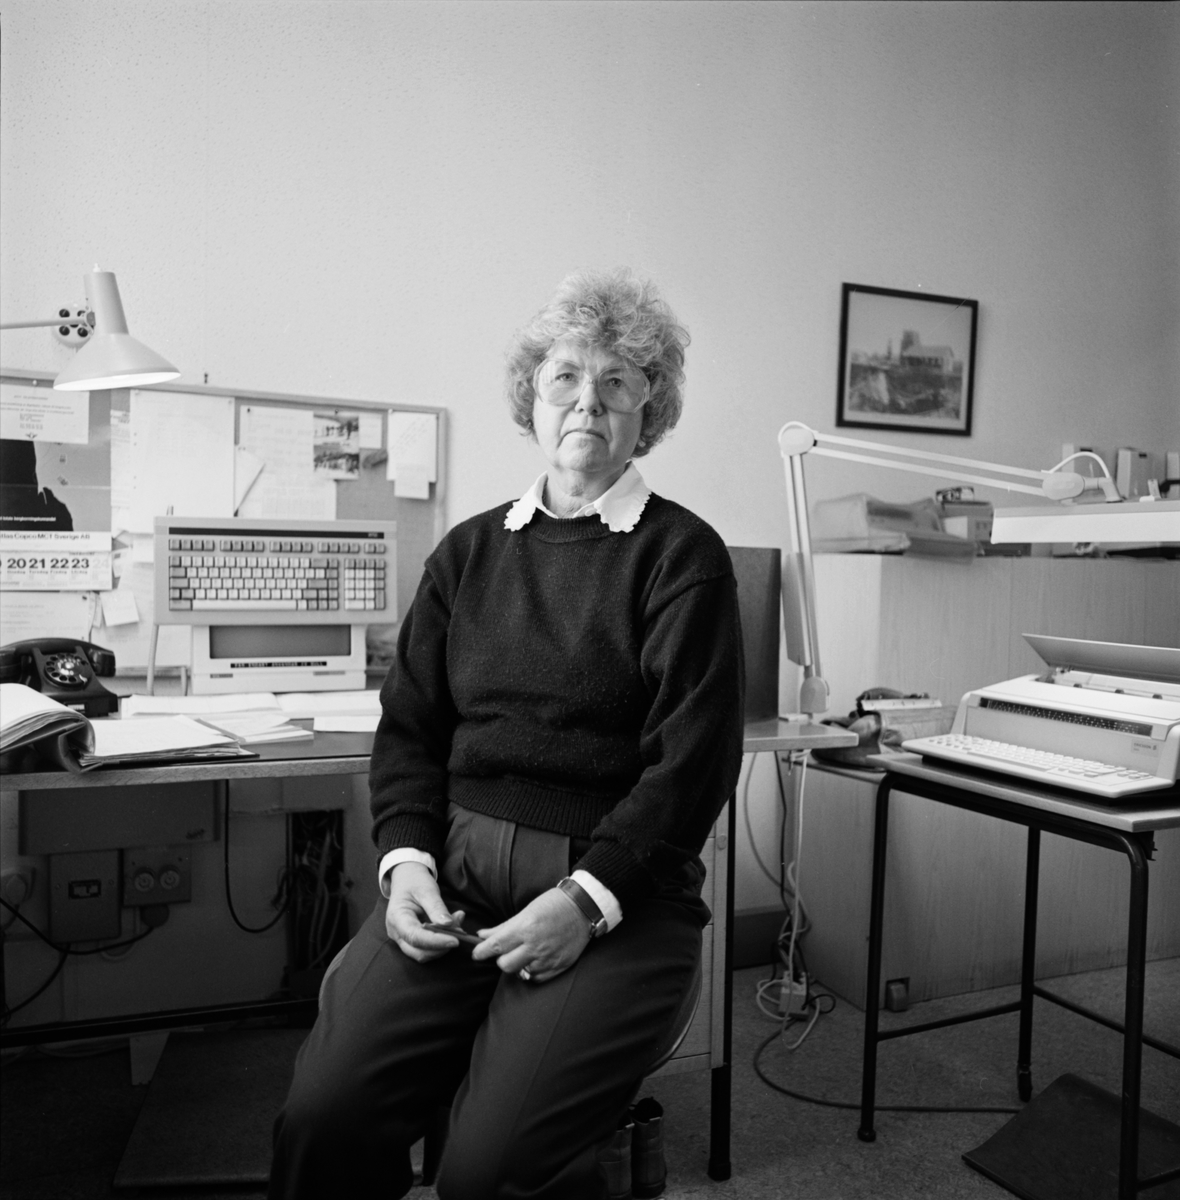 Växeltelefonisten på sitt kontor, Gruvkontoret, Dannemora Gruvor AB, Dannemora, Uppland hösten 1991